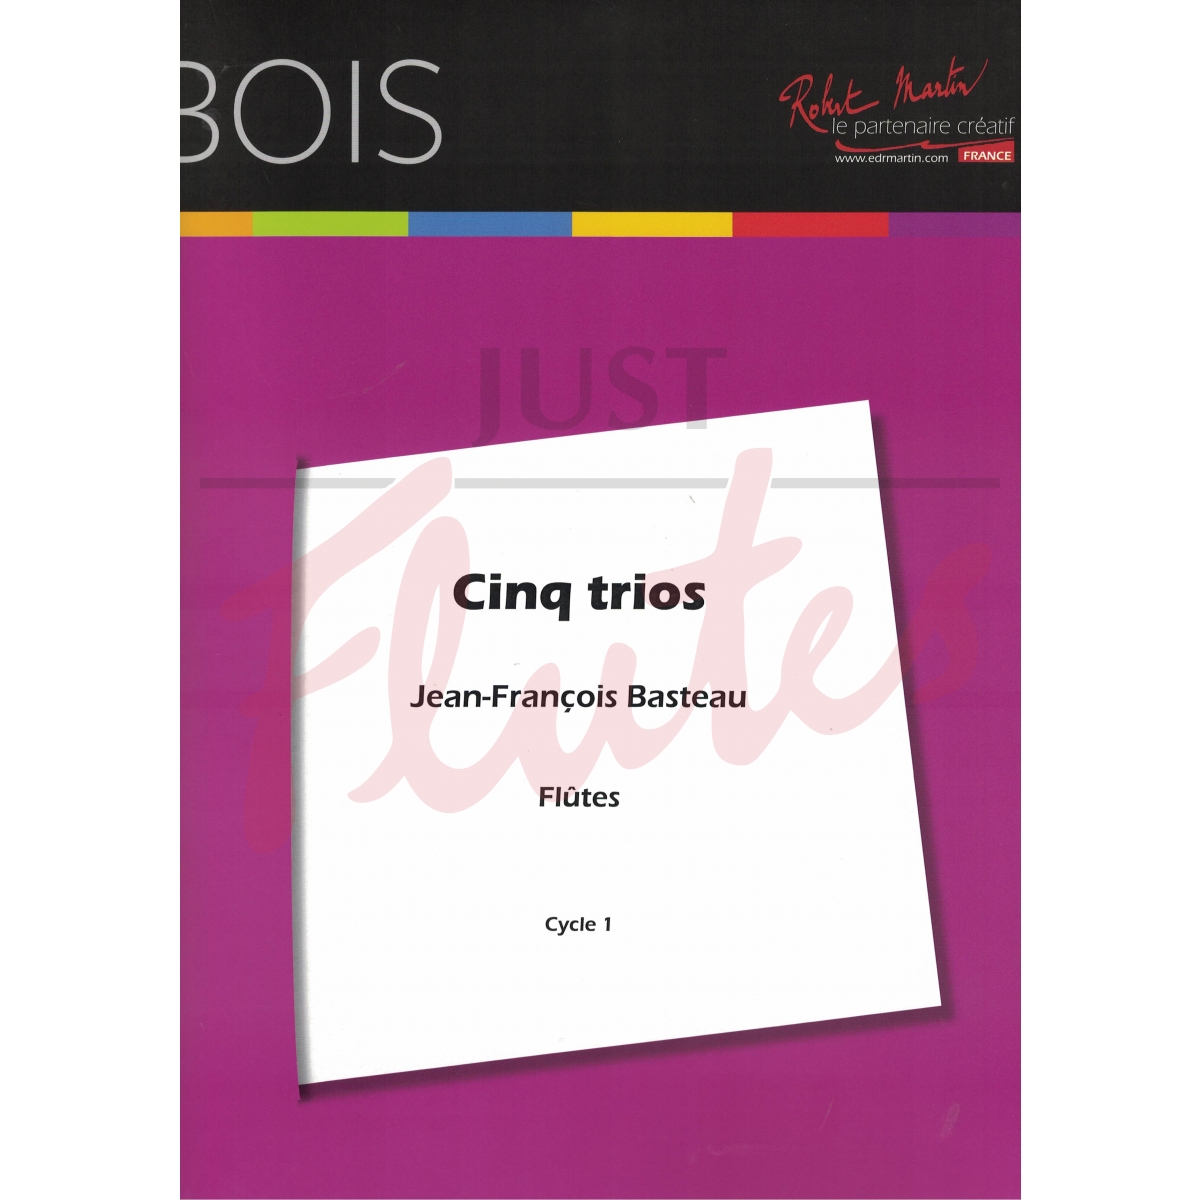 5 Trios for Three Flutes